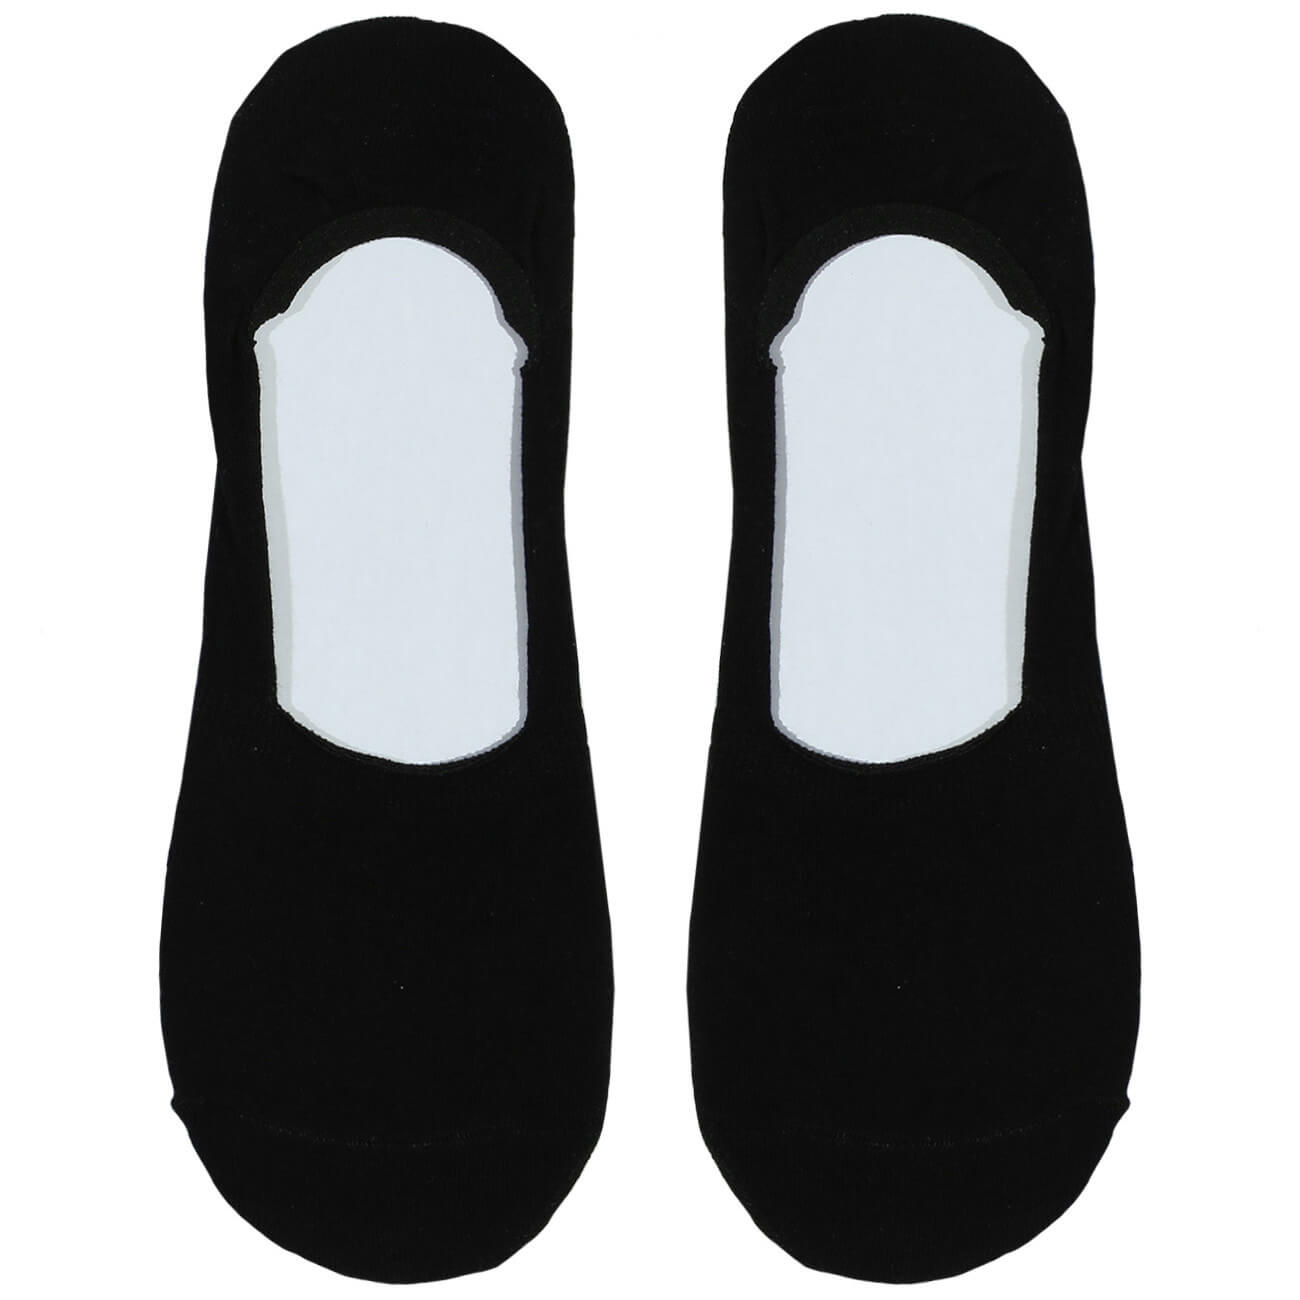 Носки-следки мужские, р. 39-42, хлопок/полиэстер, черные, Basic носки женские р 38 41 хлопок полиэстер черные basic